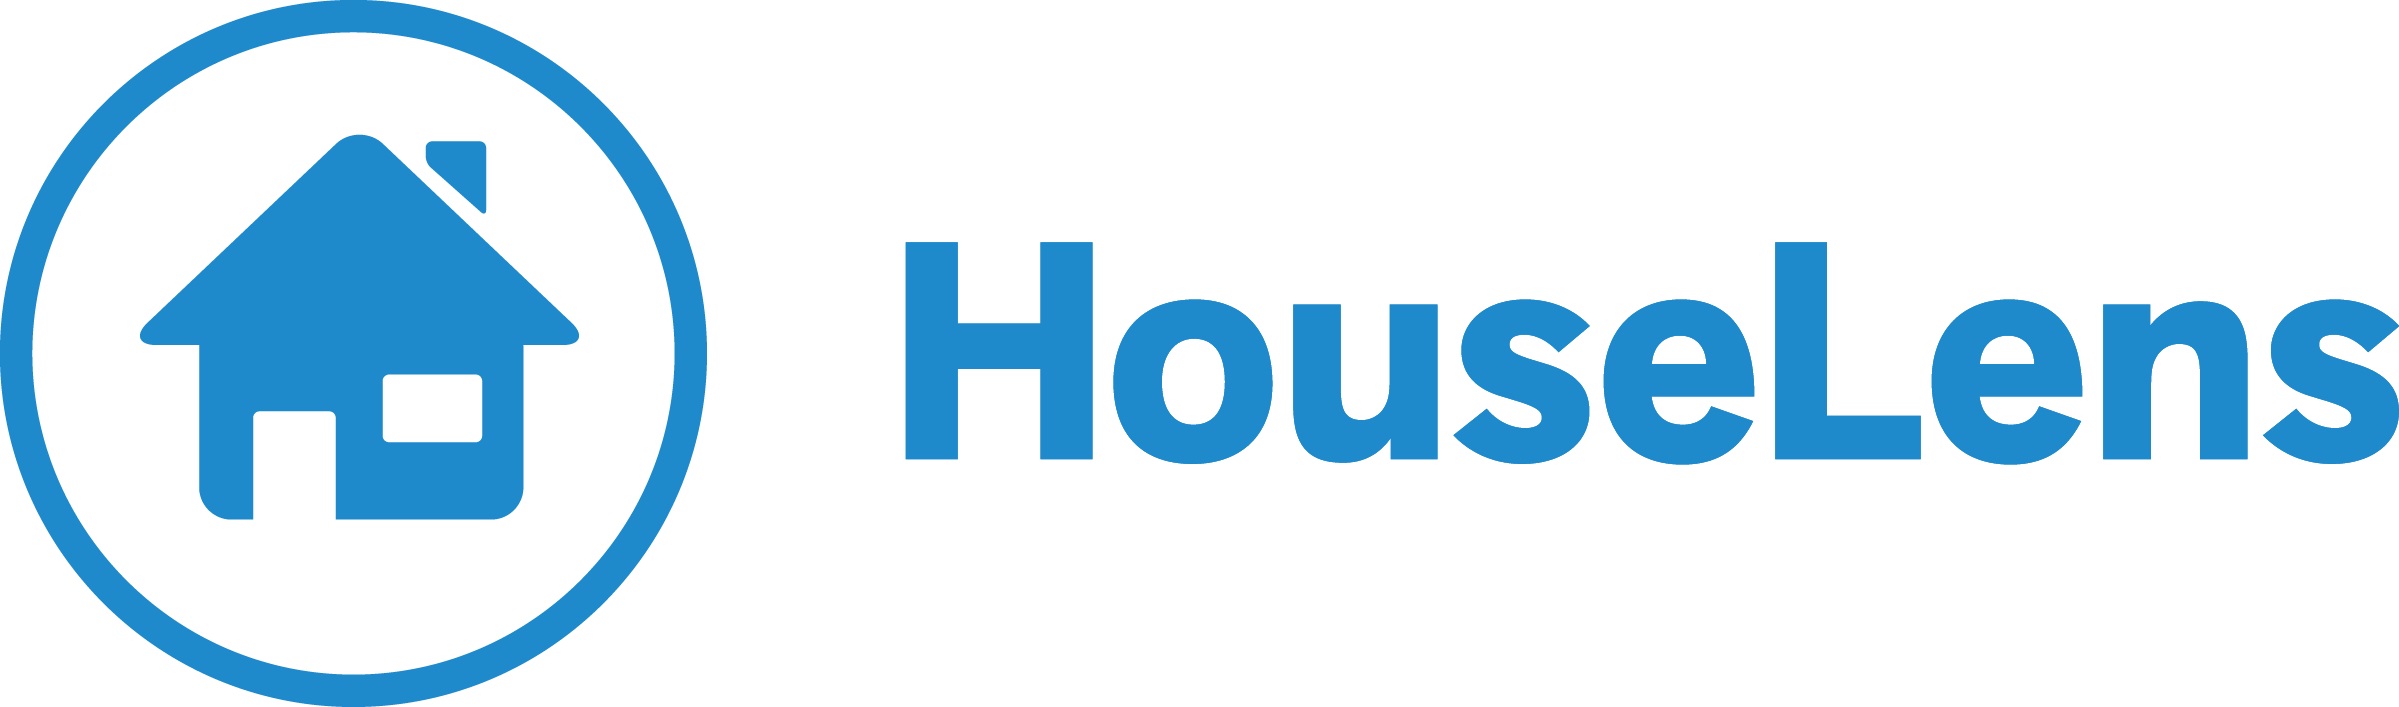 HouseLens Launches V